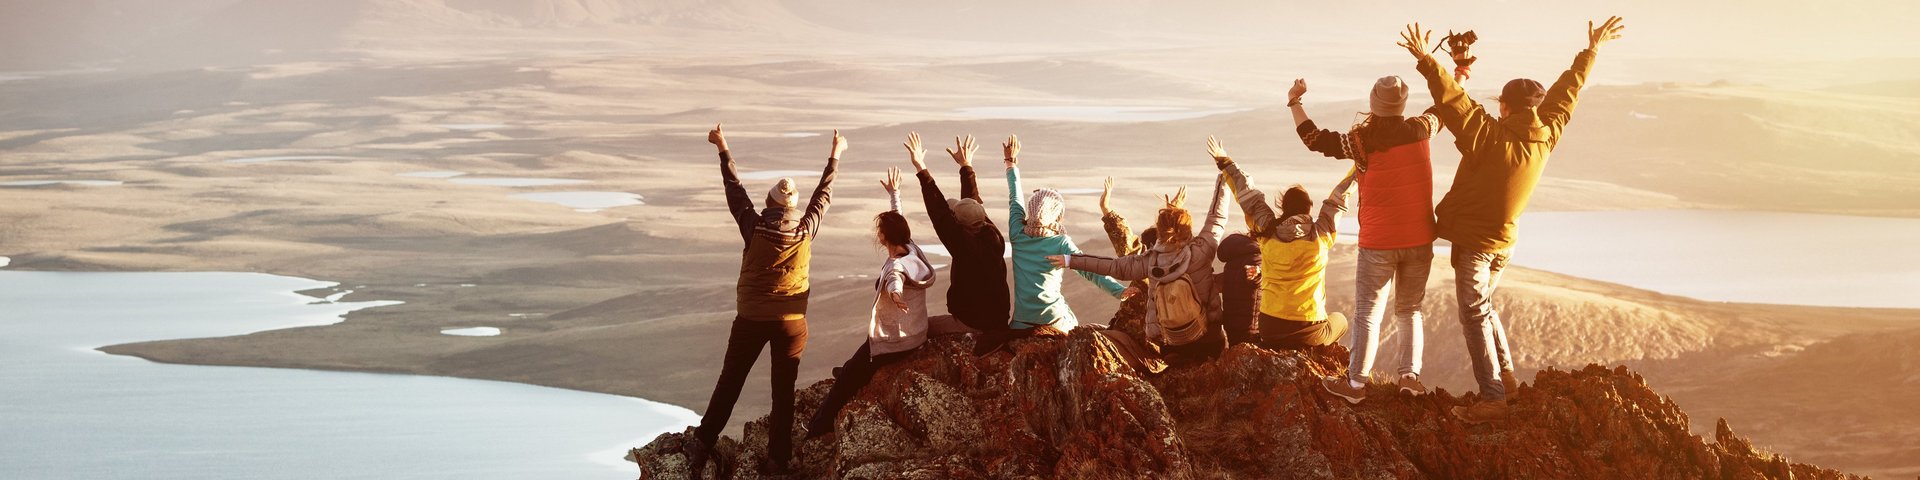 Team - Gruppe von Mitarbeiter:innen auf einem Berggipfel bei Sonnenaufgang